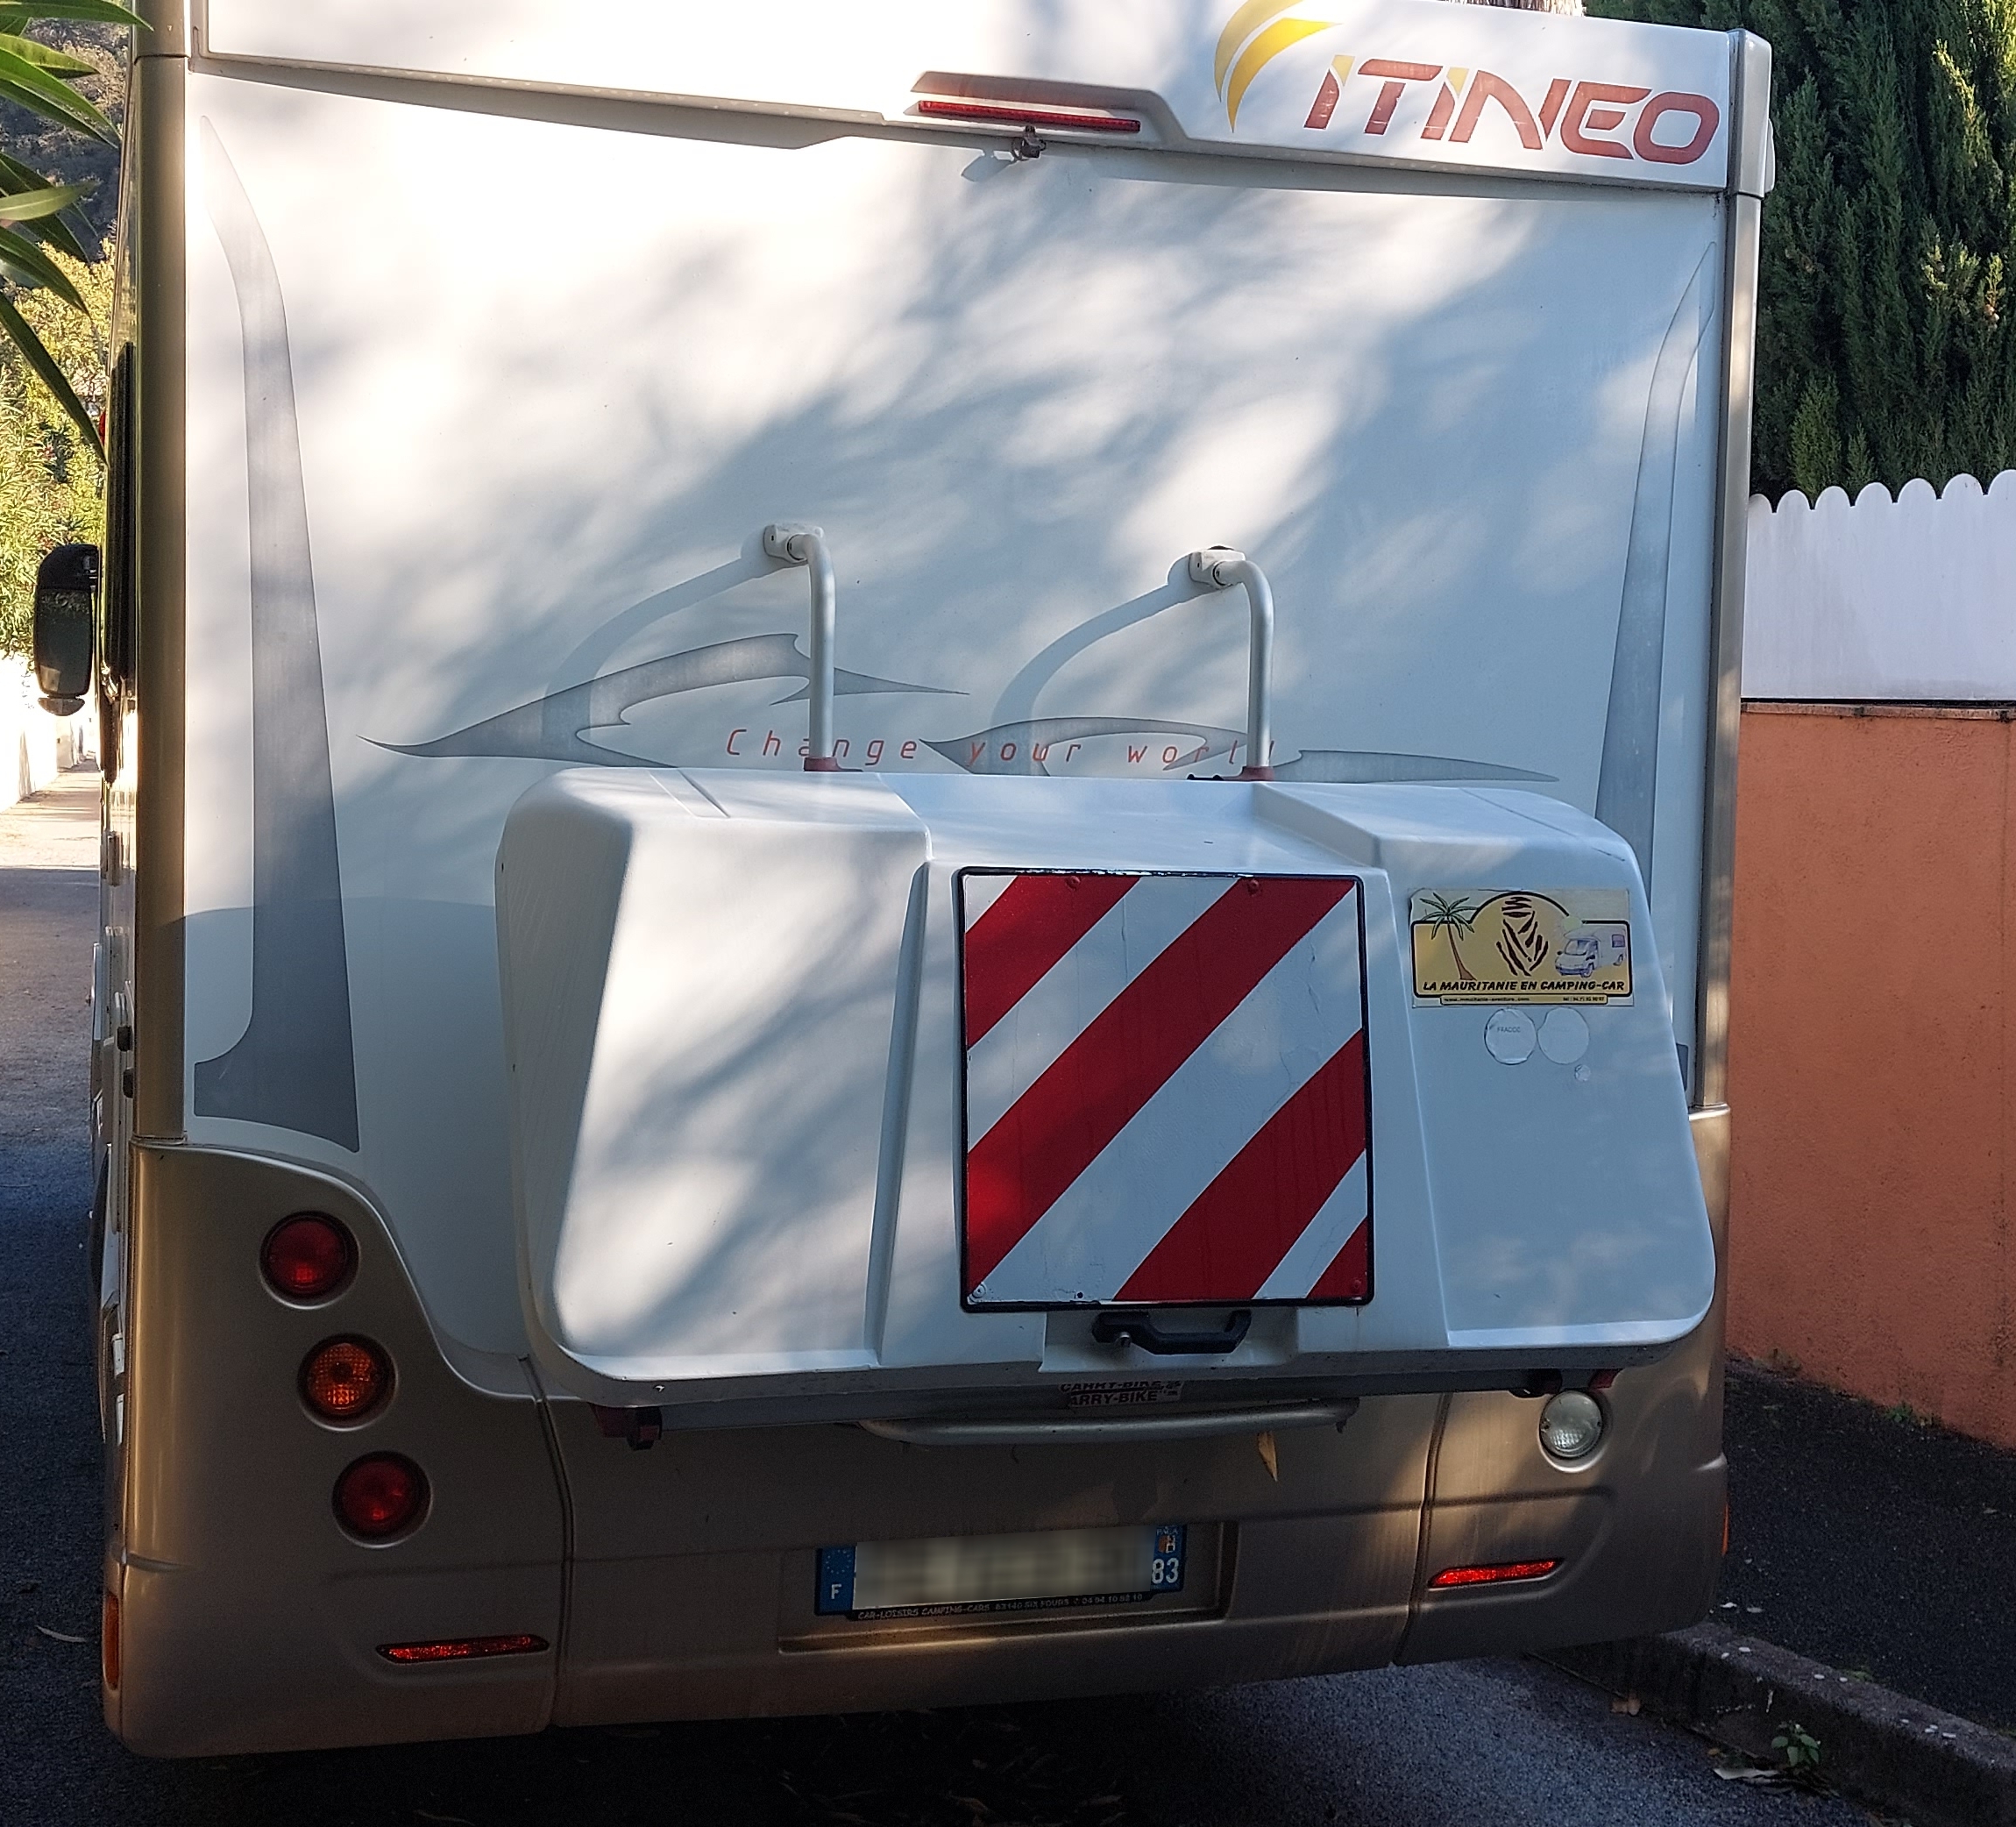 FIAT DUCATO ITINEO TB 690 / 2.3L 130 CV (à vendre) U8s8